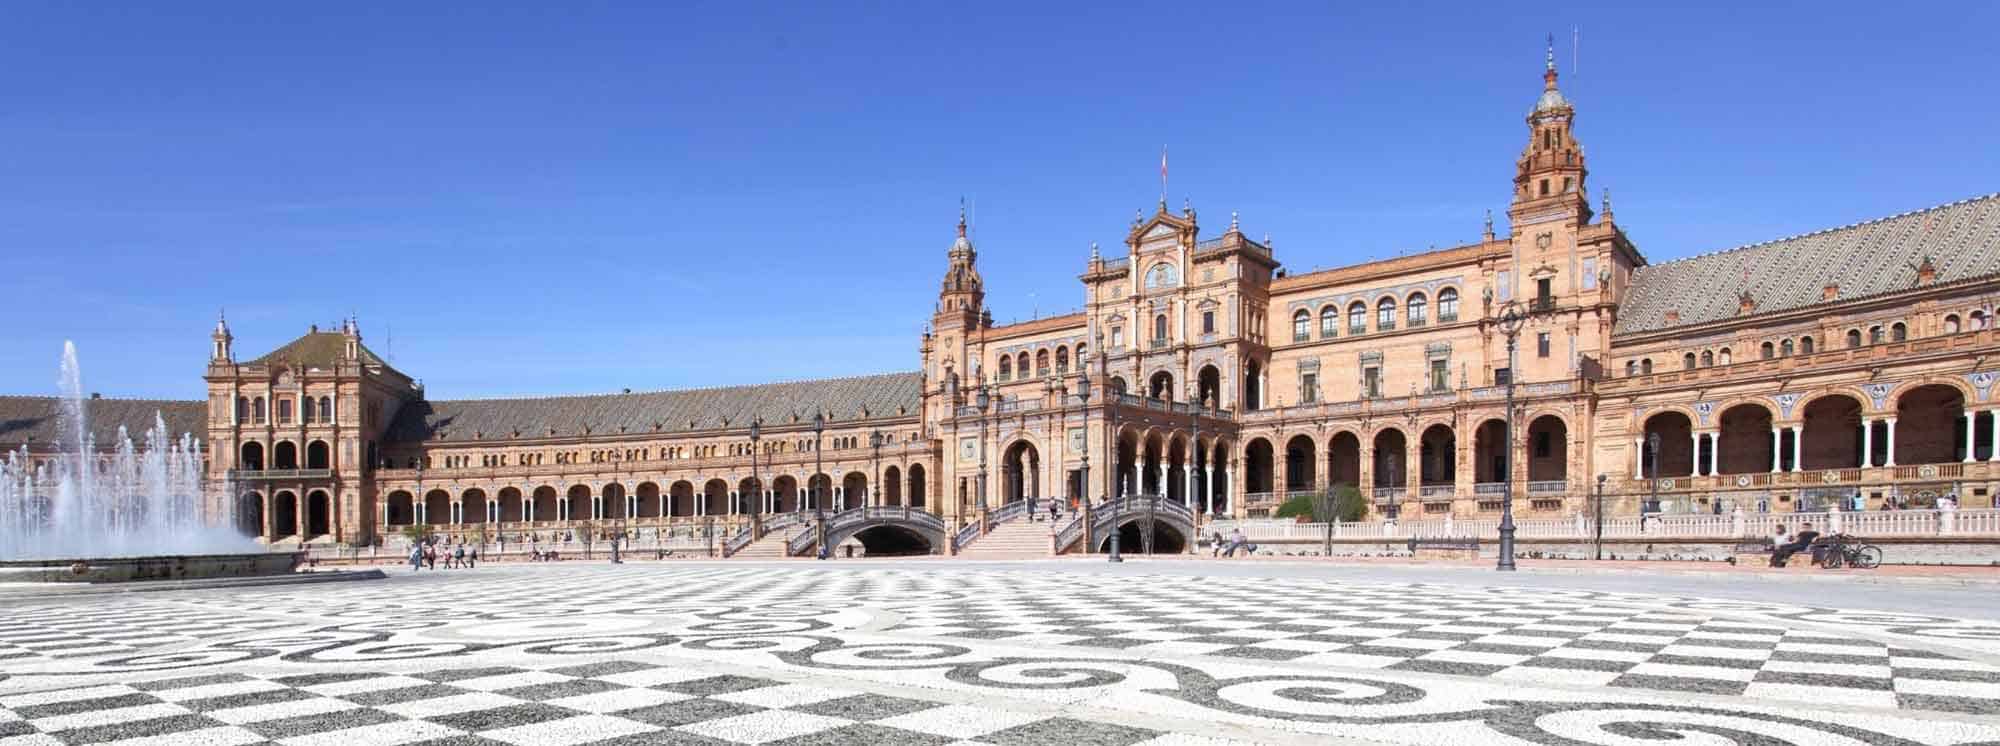 Best Schools in Seville